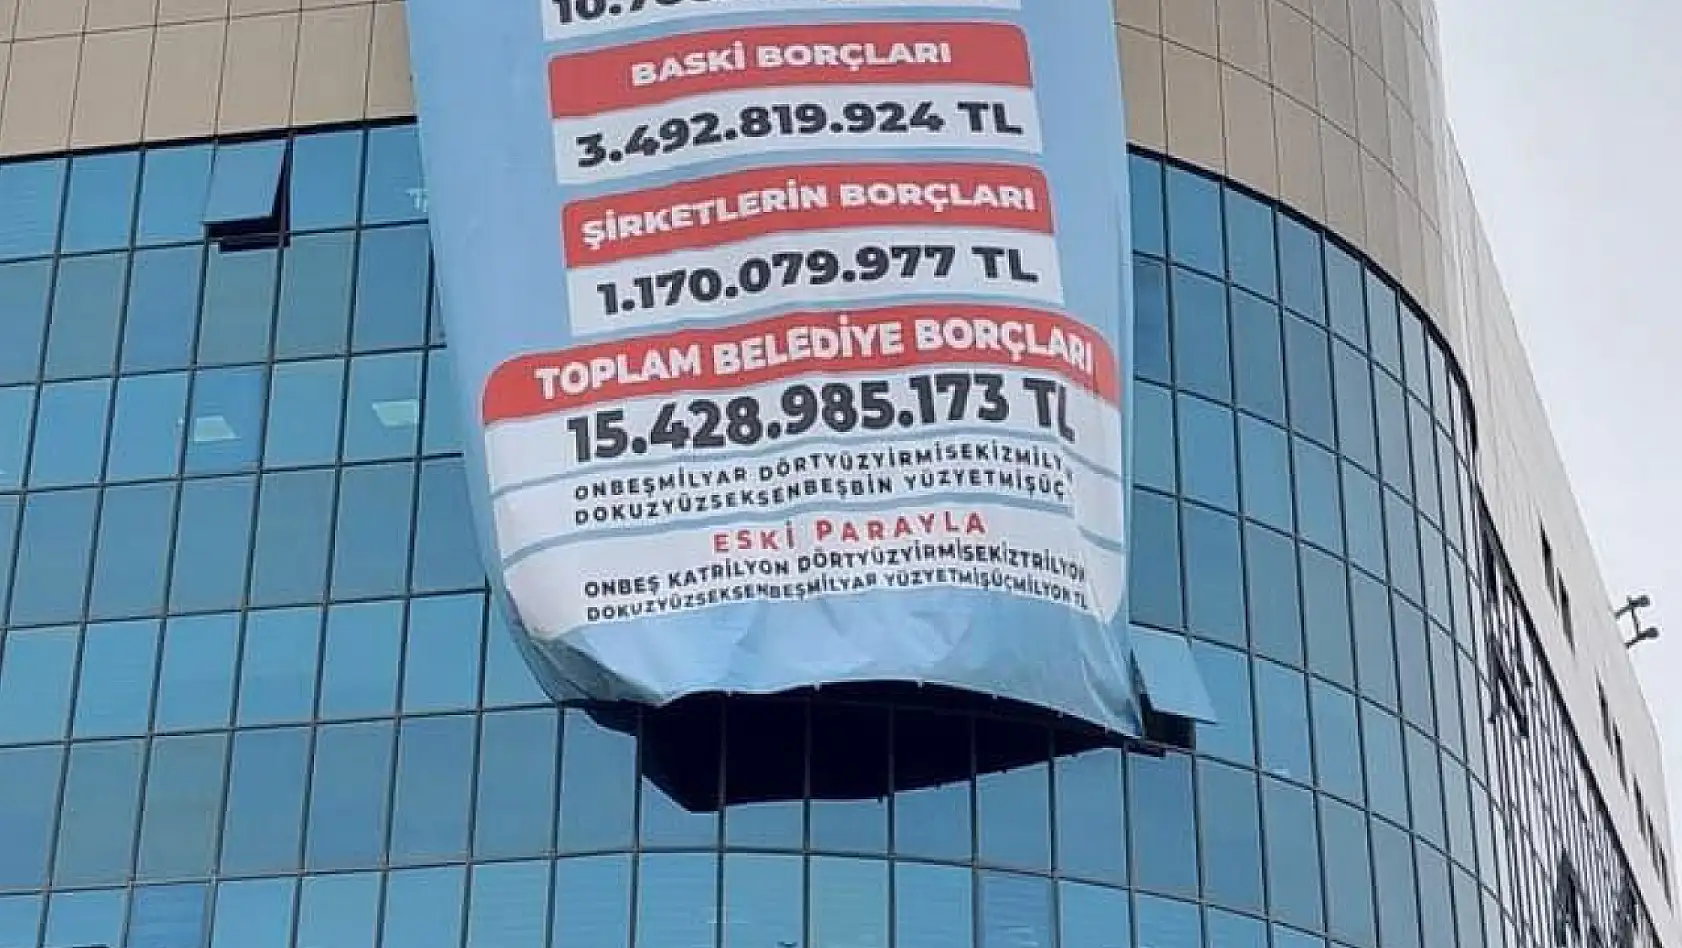 Balıkesir Büyükşehir Belediyesi'nde borç 15,5 milyar TL